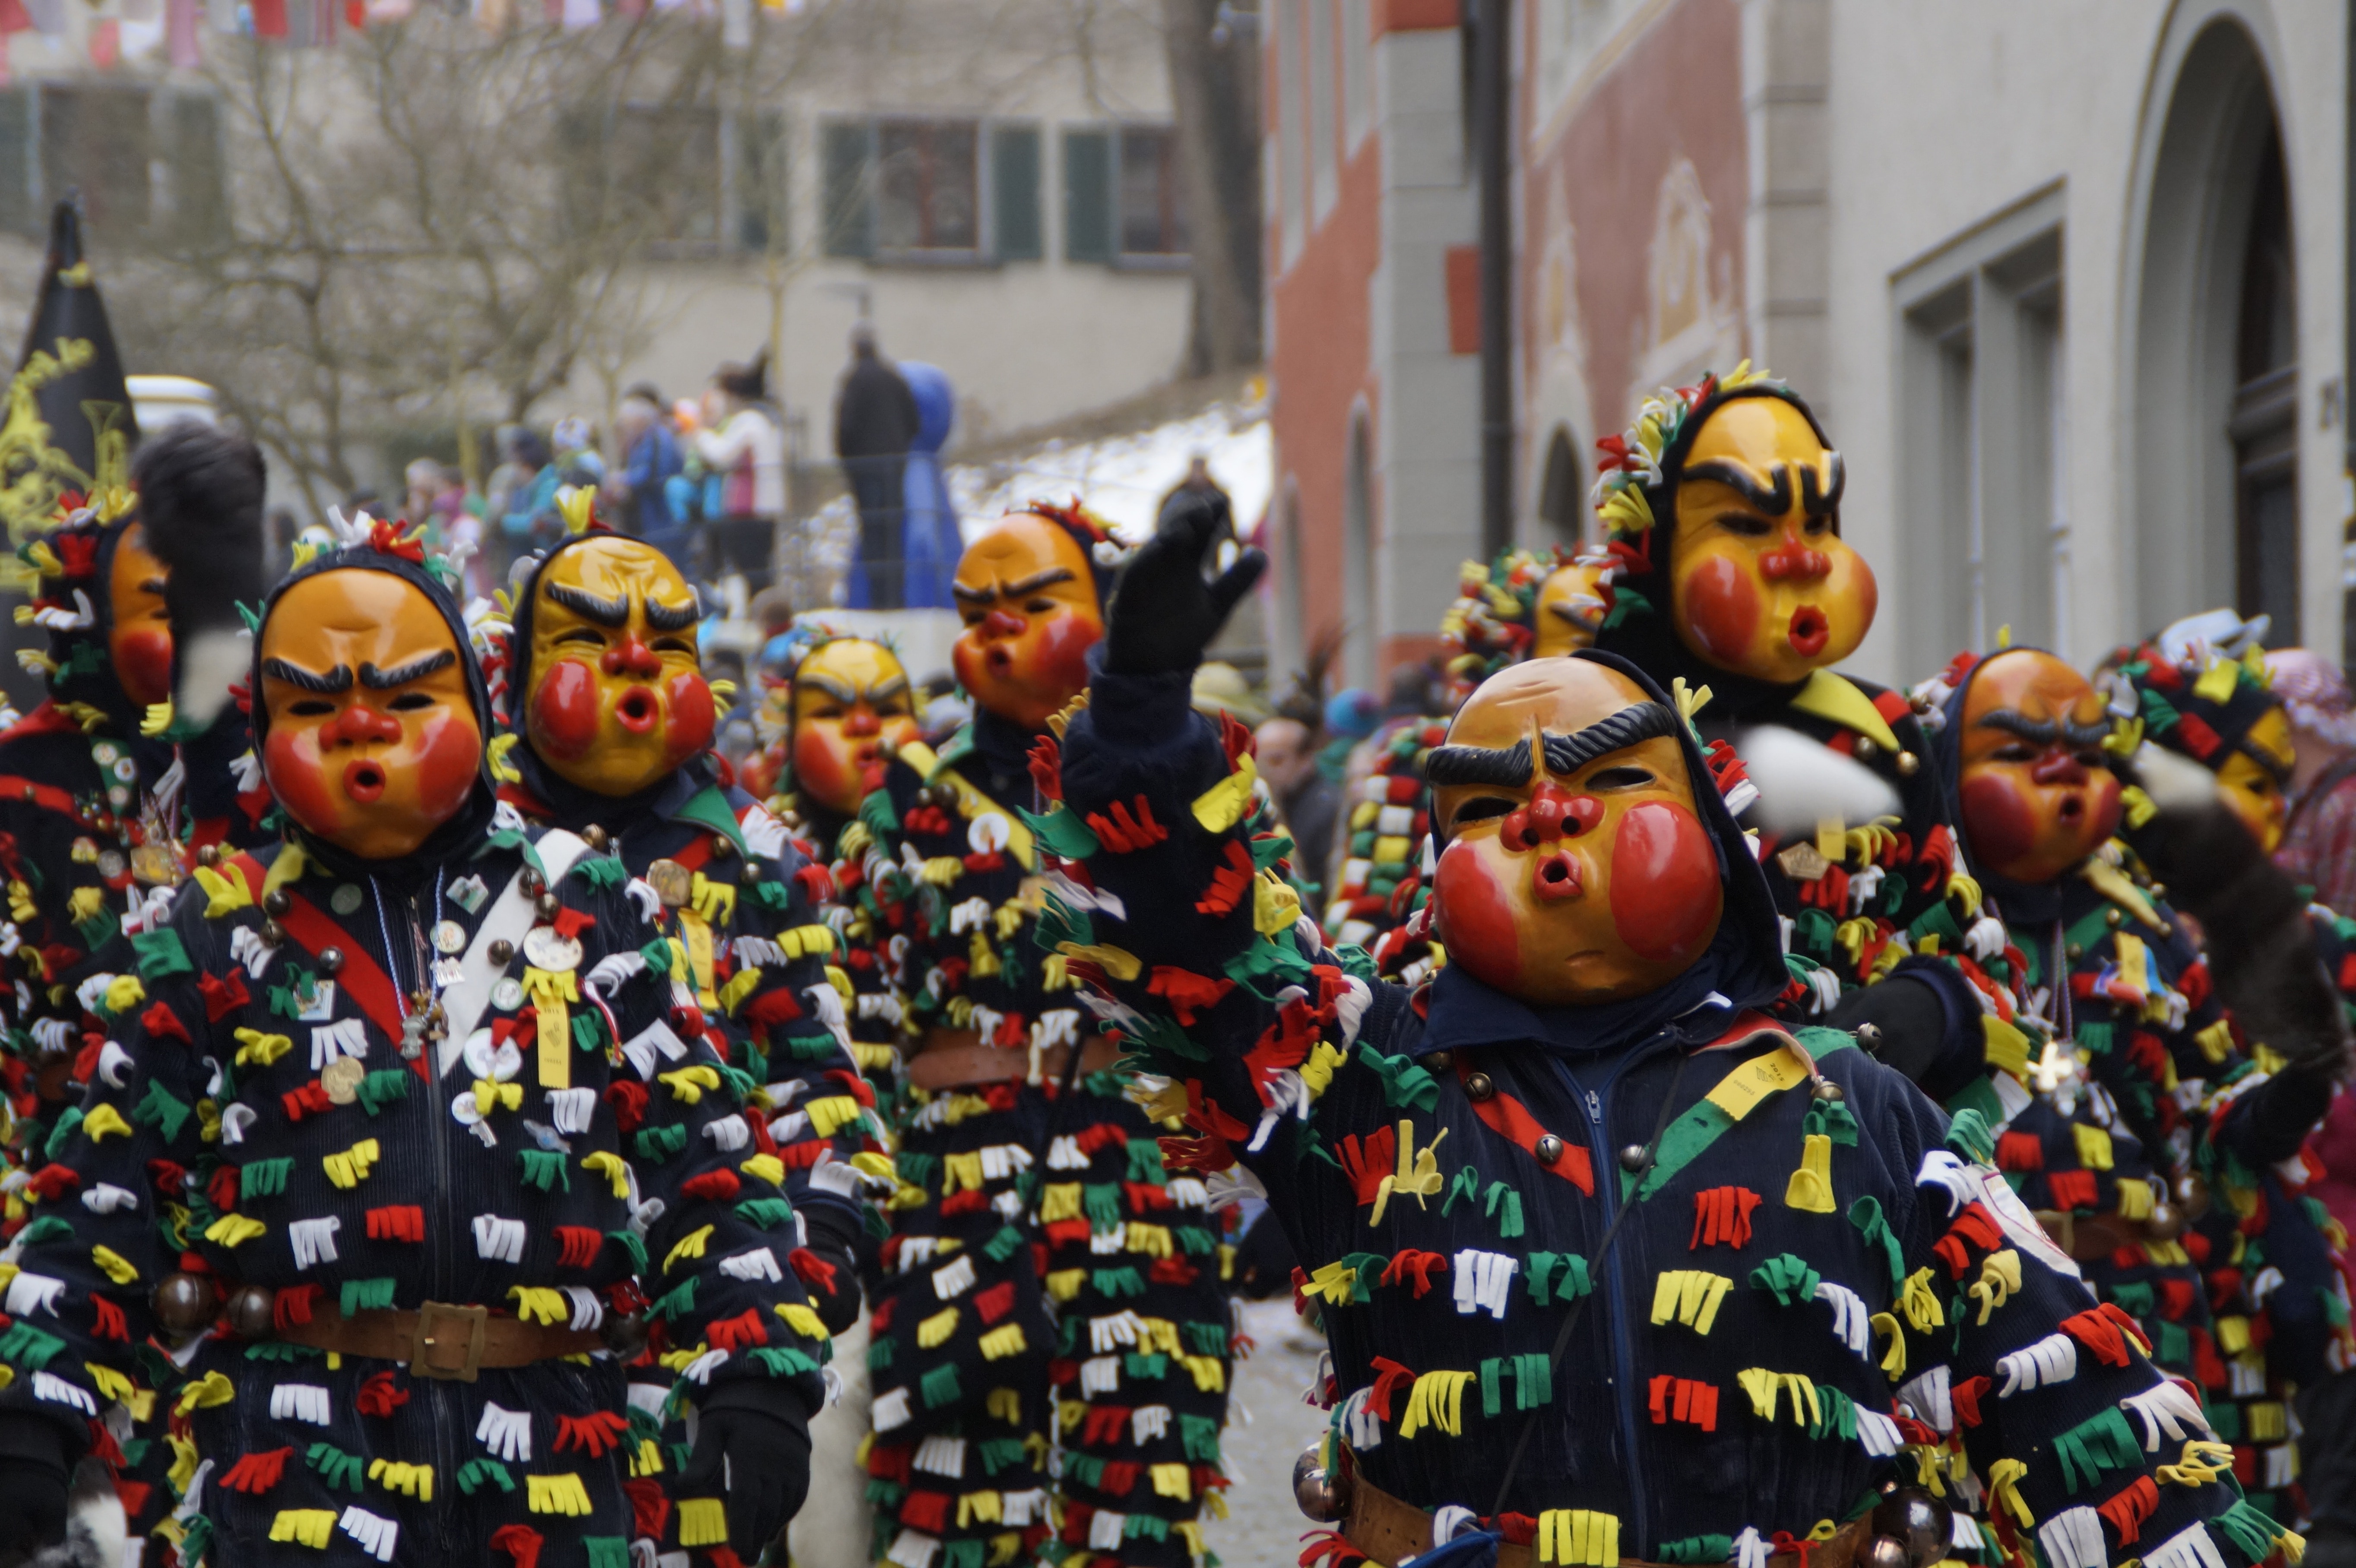 parade of people wearing mask